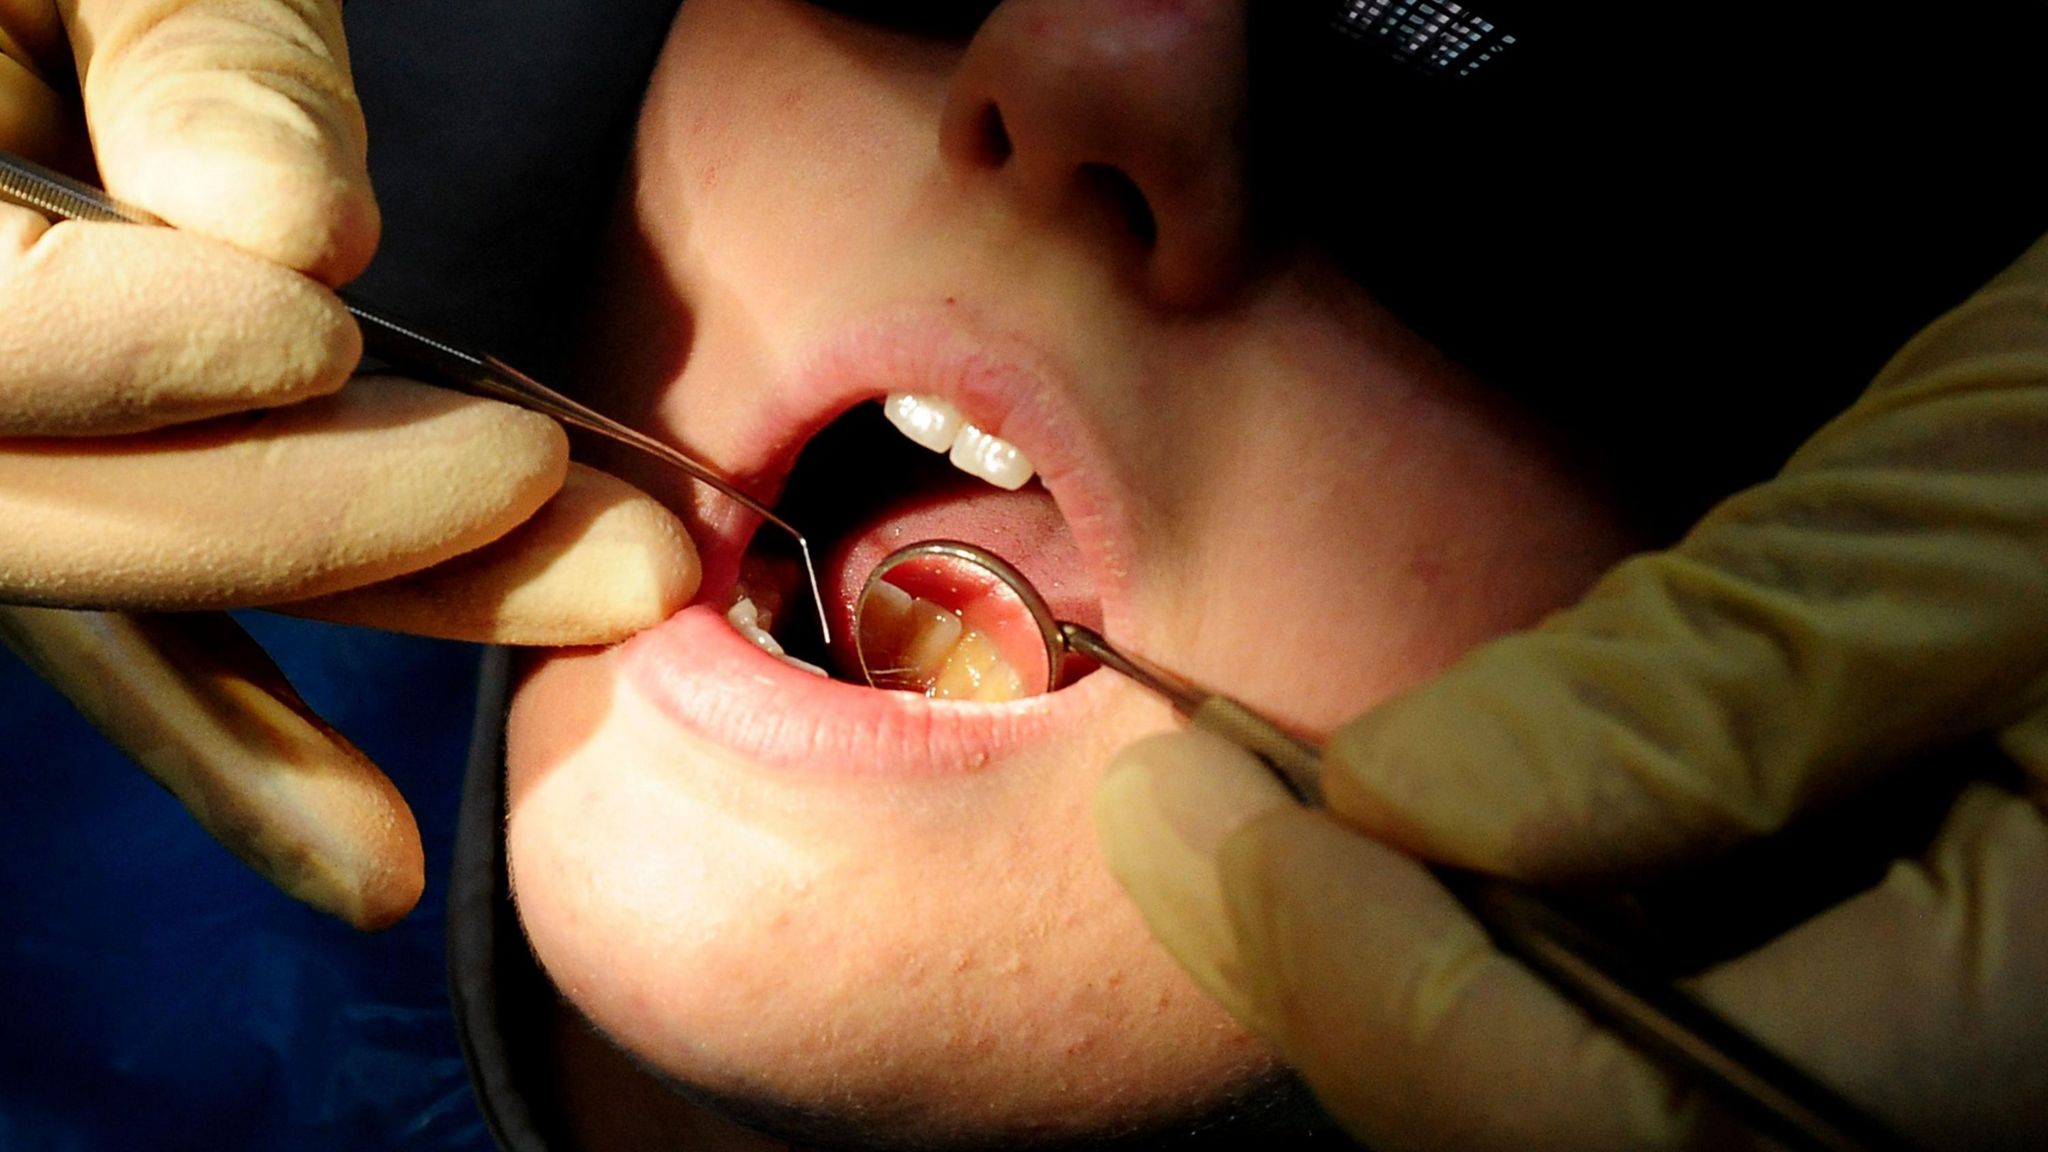 Dental work being undertaken